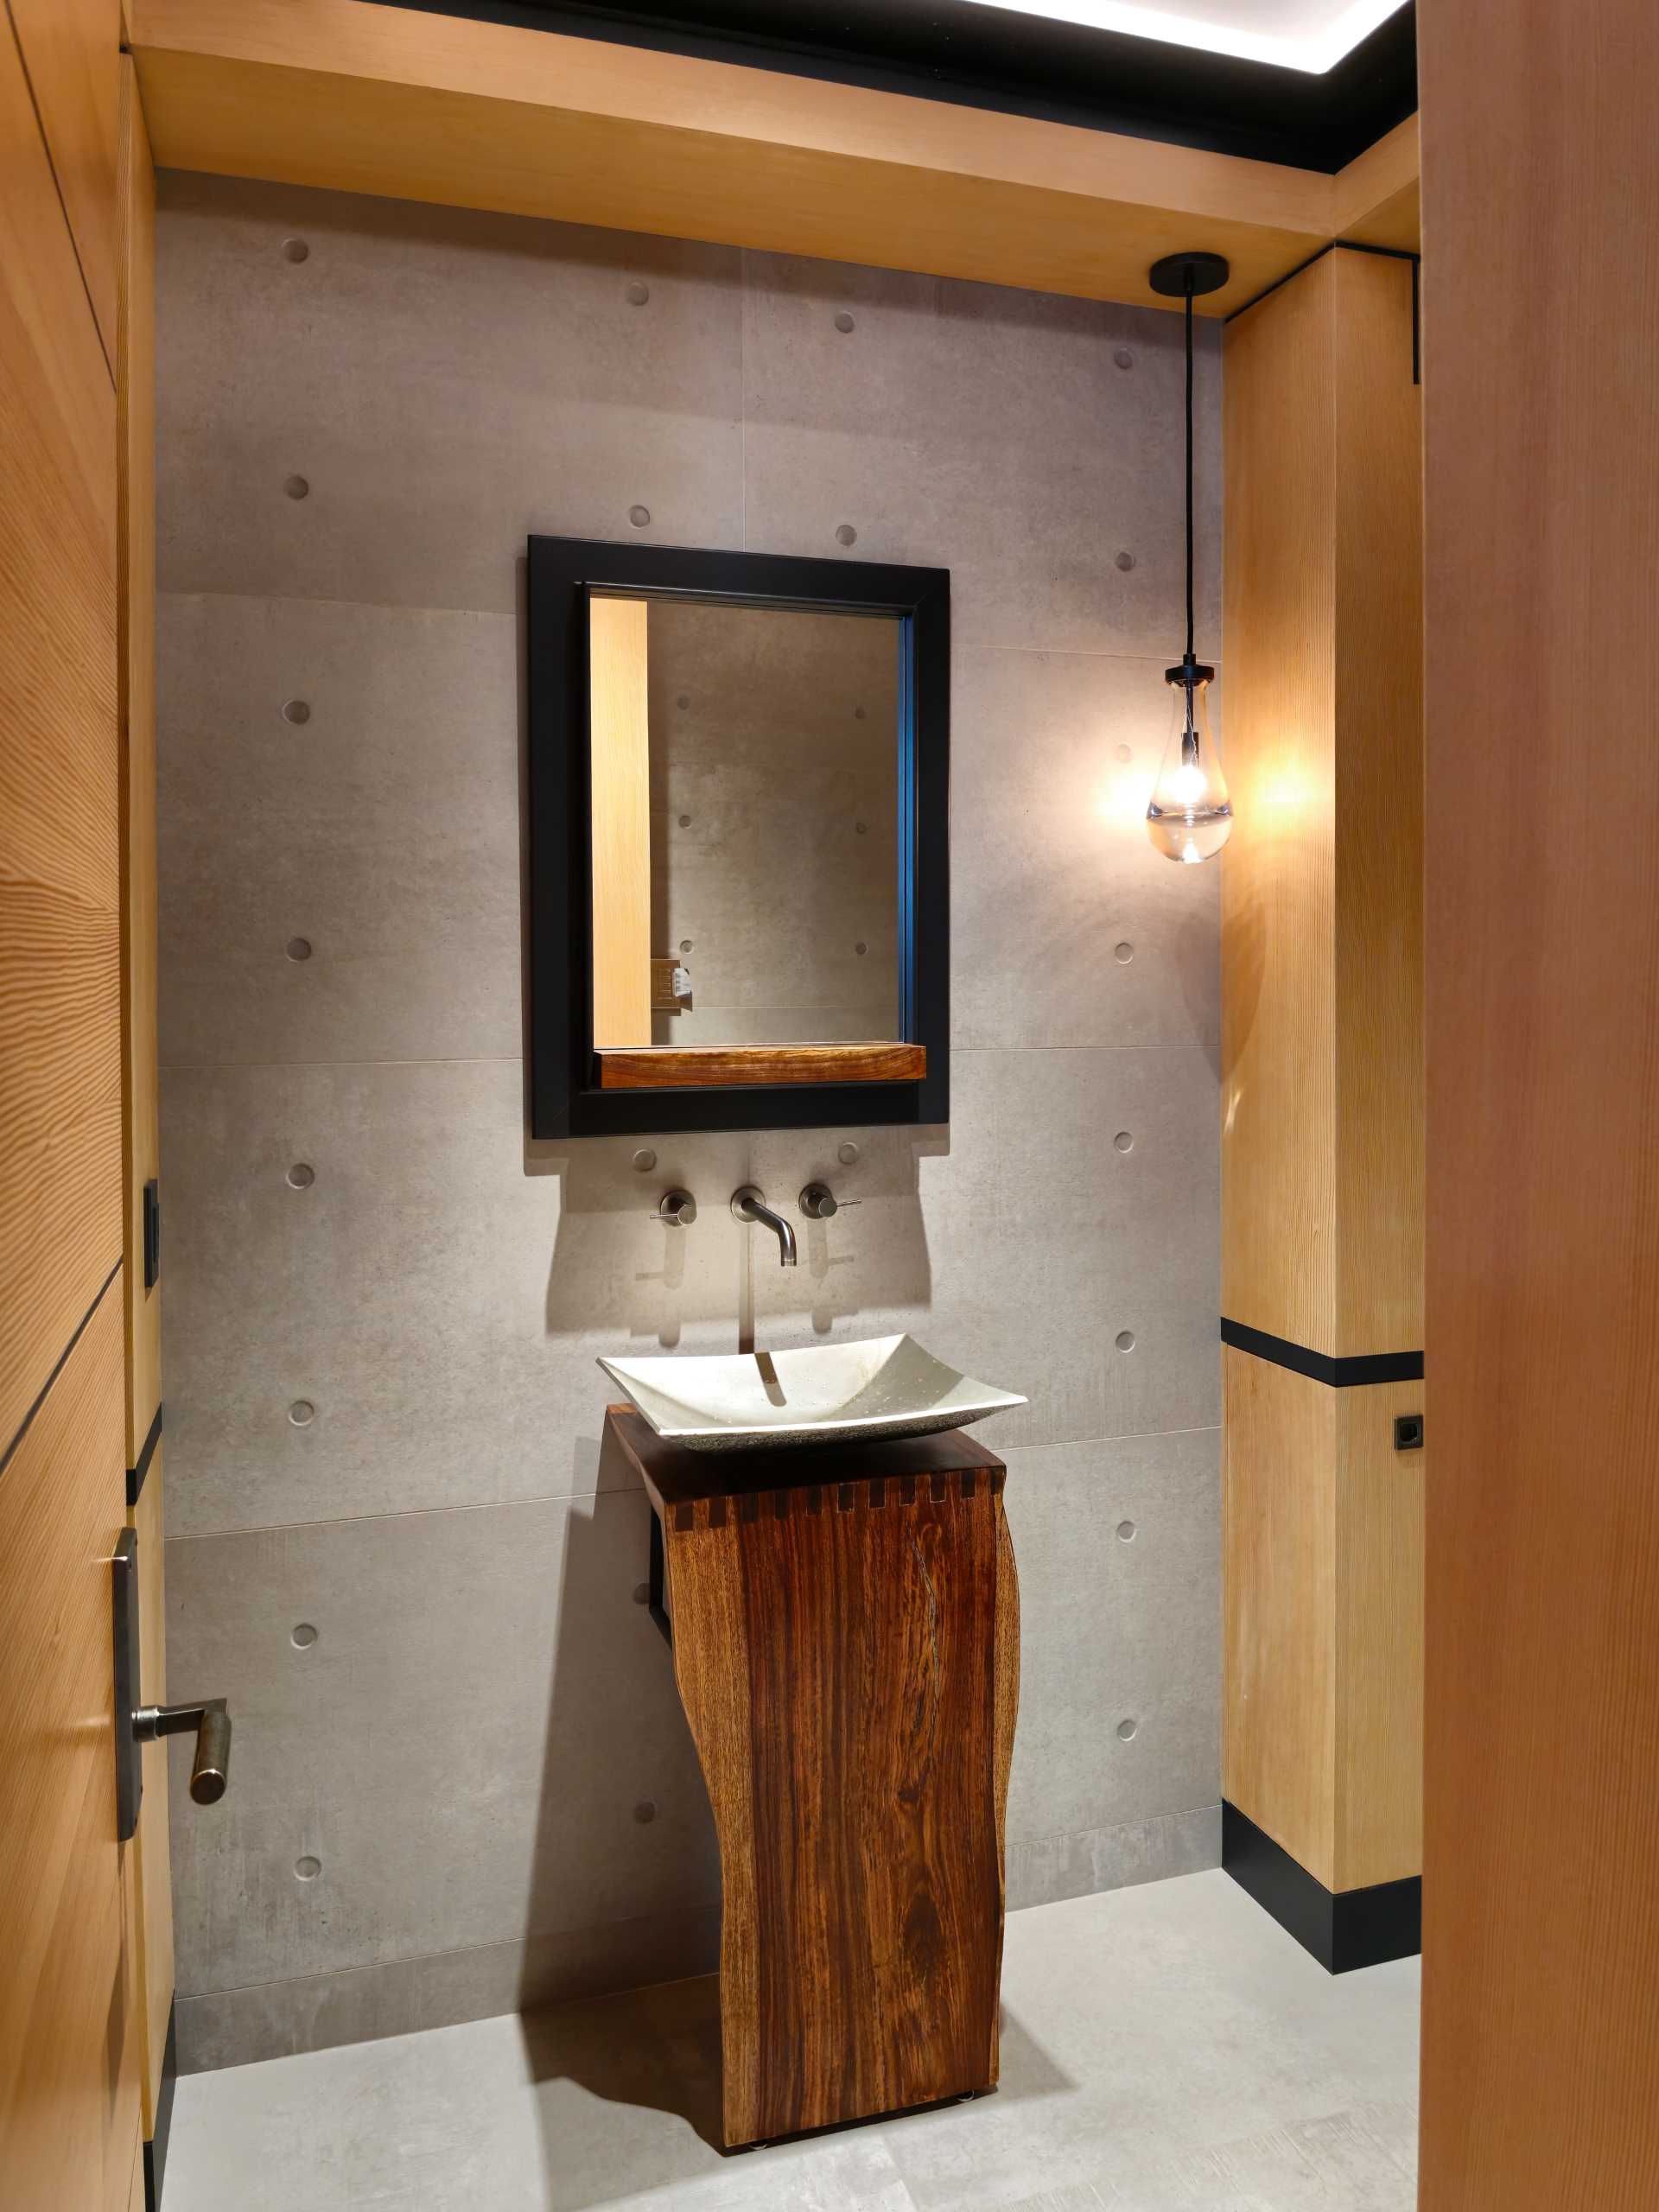 O cameră de toaletă modernă cu structură din lemn și oțel expusă.